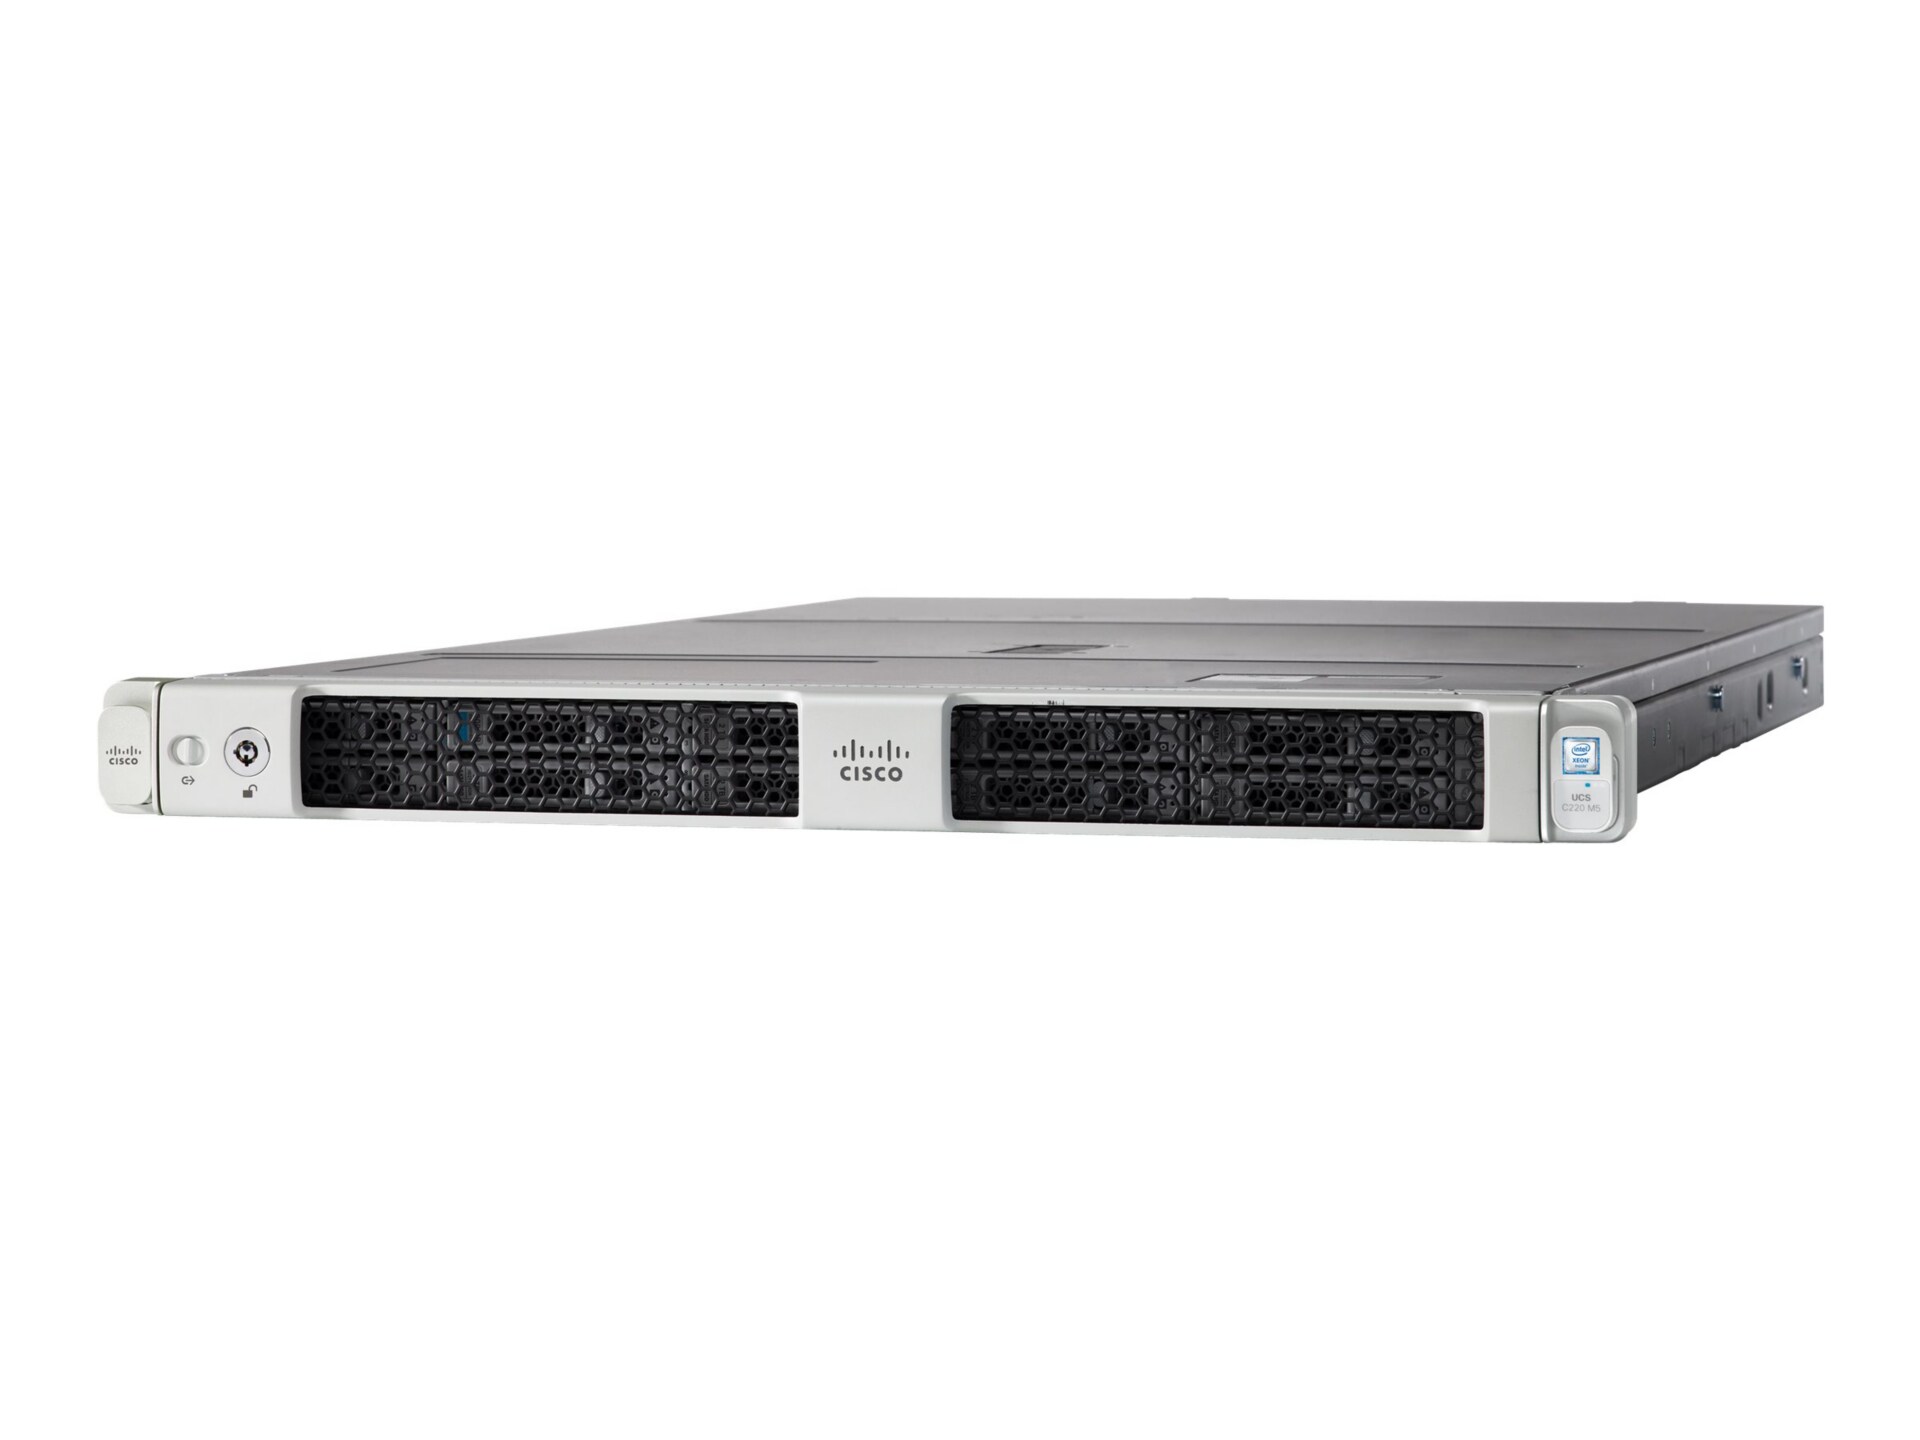 Cisco UCS SmartPlay Select C220 M5 Standard 1 - rack-mountable - Xeon Silve